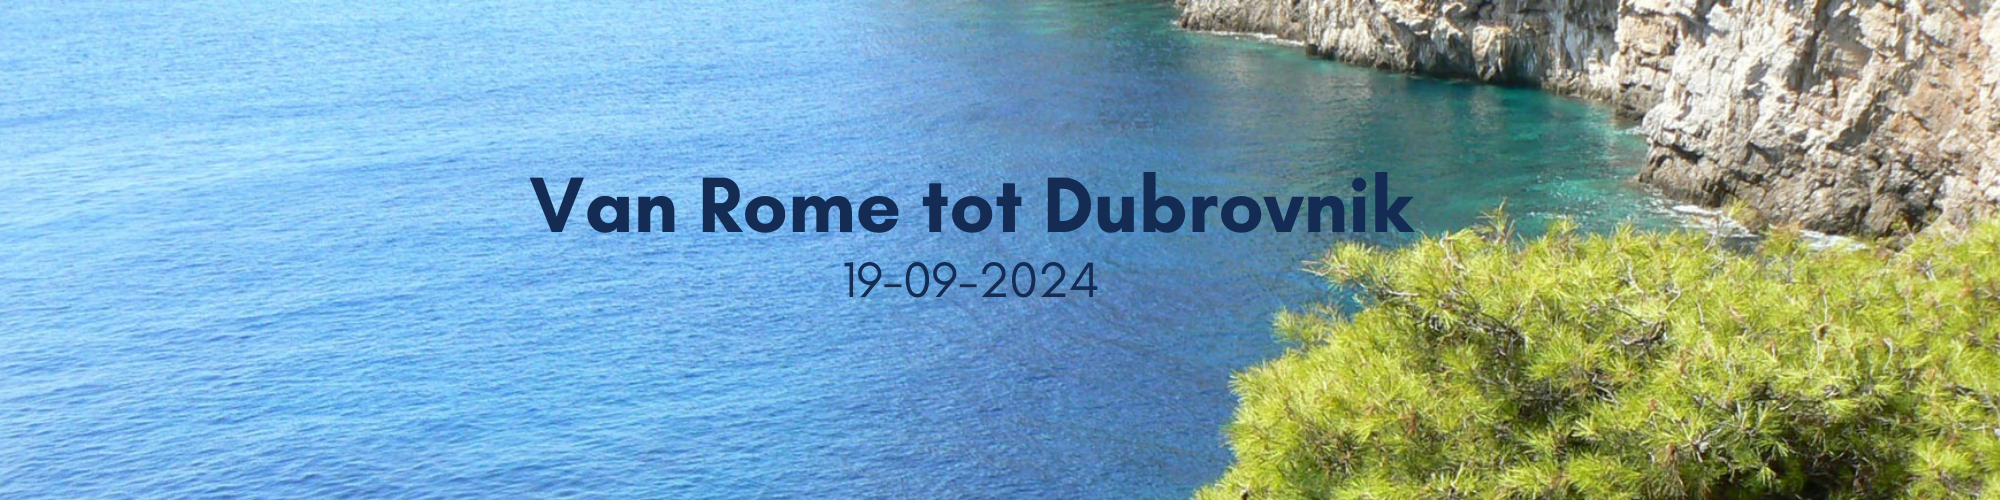 19-09-2024 Van Rome tot Dubrovnik Hapag Lloyd